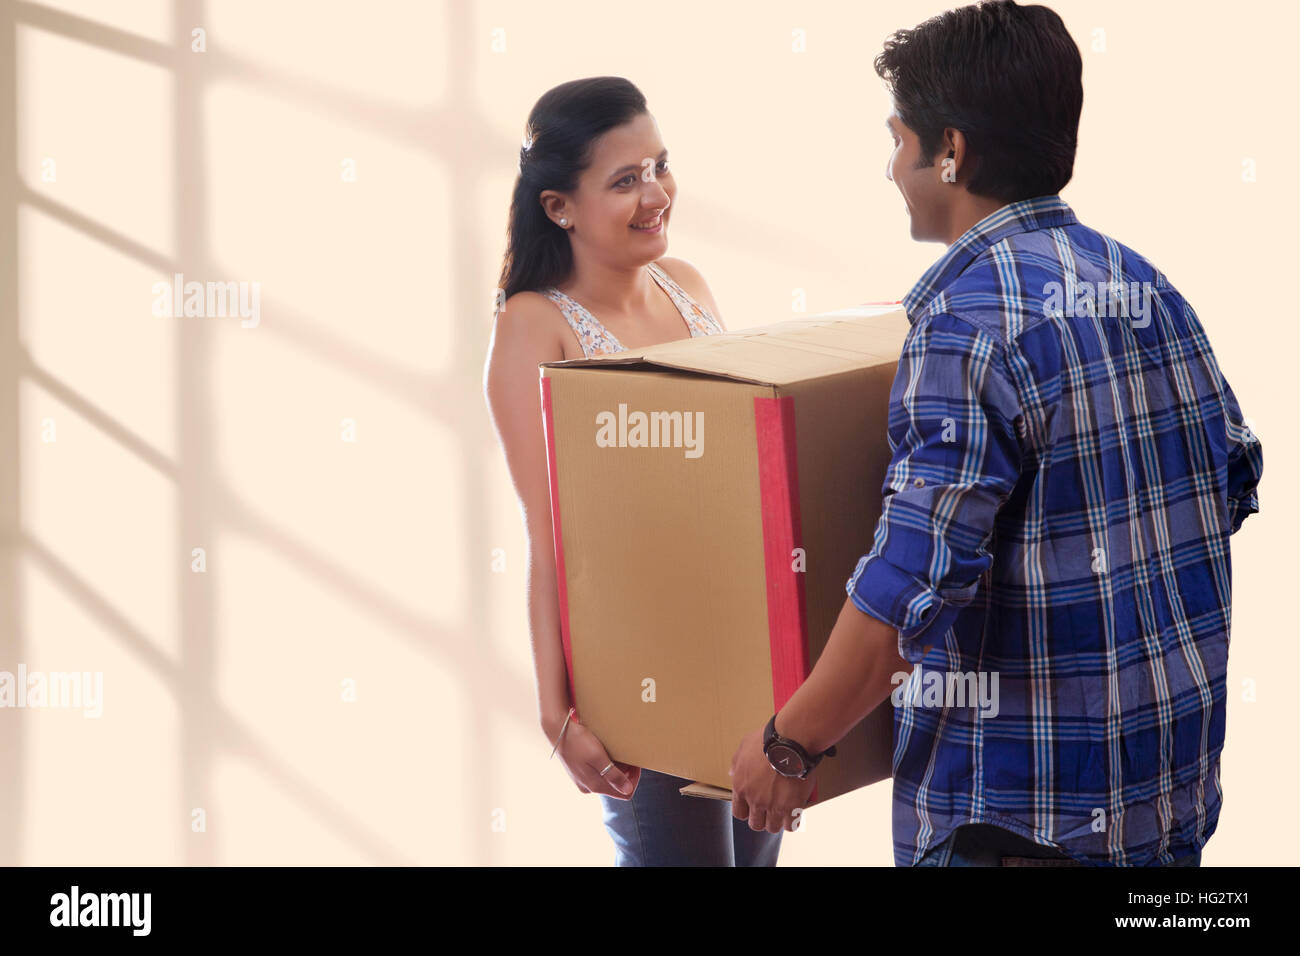 Young man carrying cardboard box avec femme tout en se déplaçant dans Banque D'Images